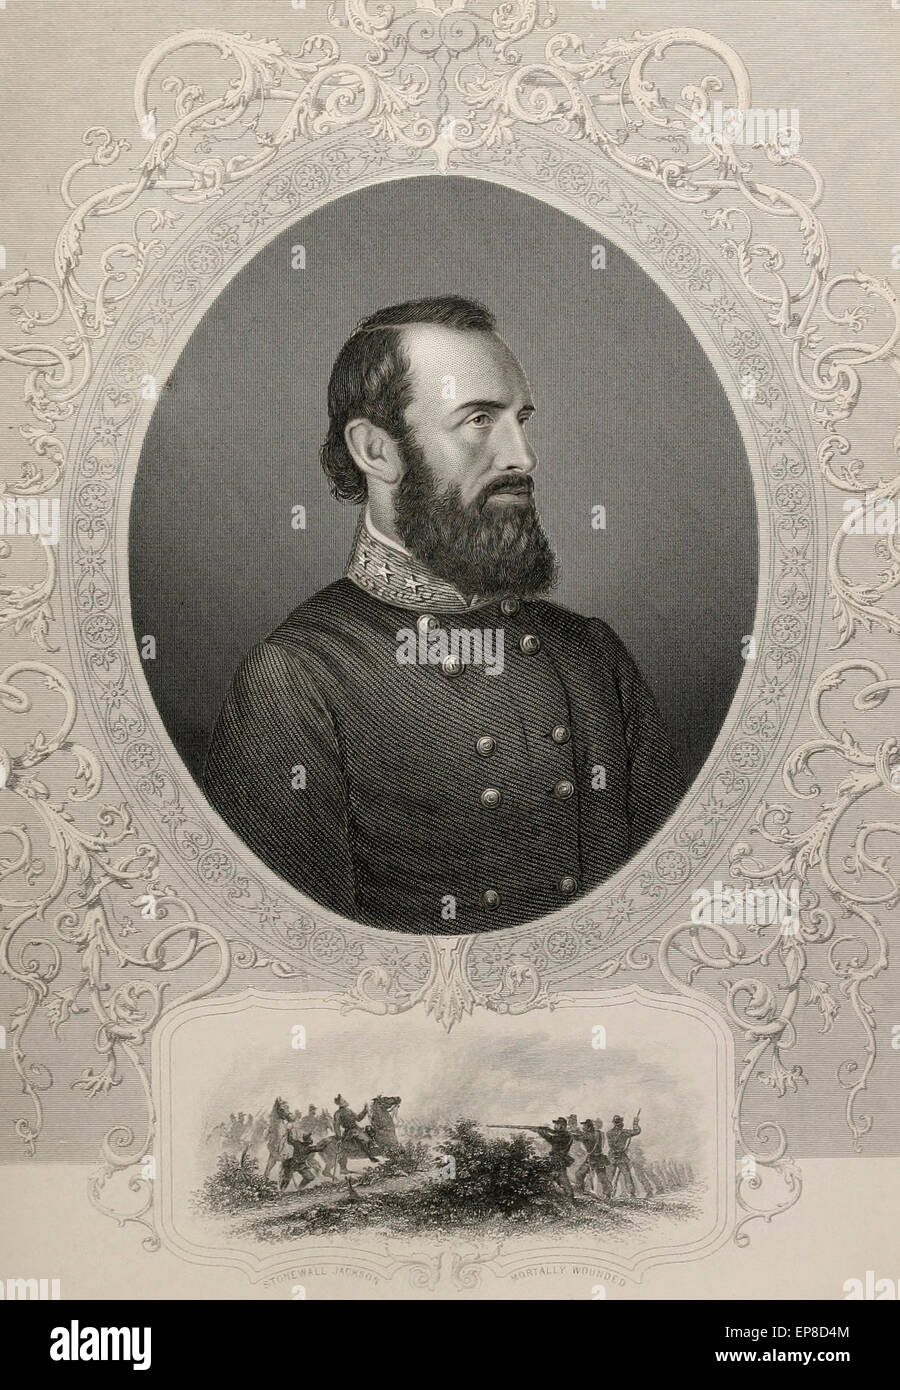 General Thomas J "Stonewall" Jackson, Konföderierte Staaten von Amerika Stockfoto